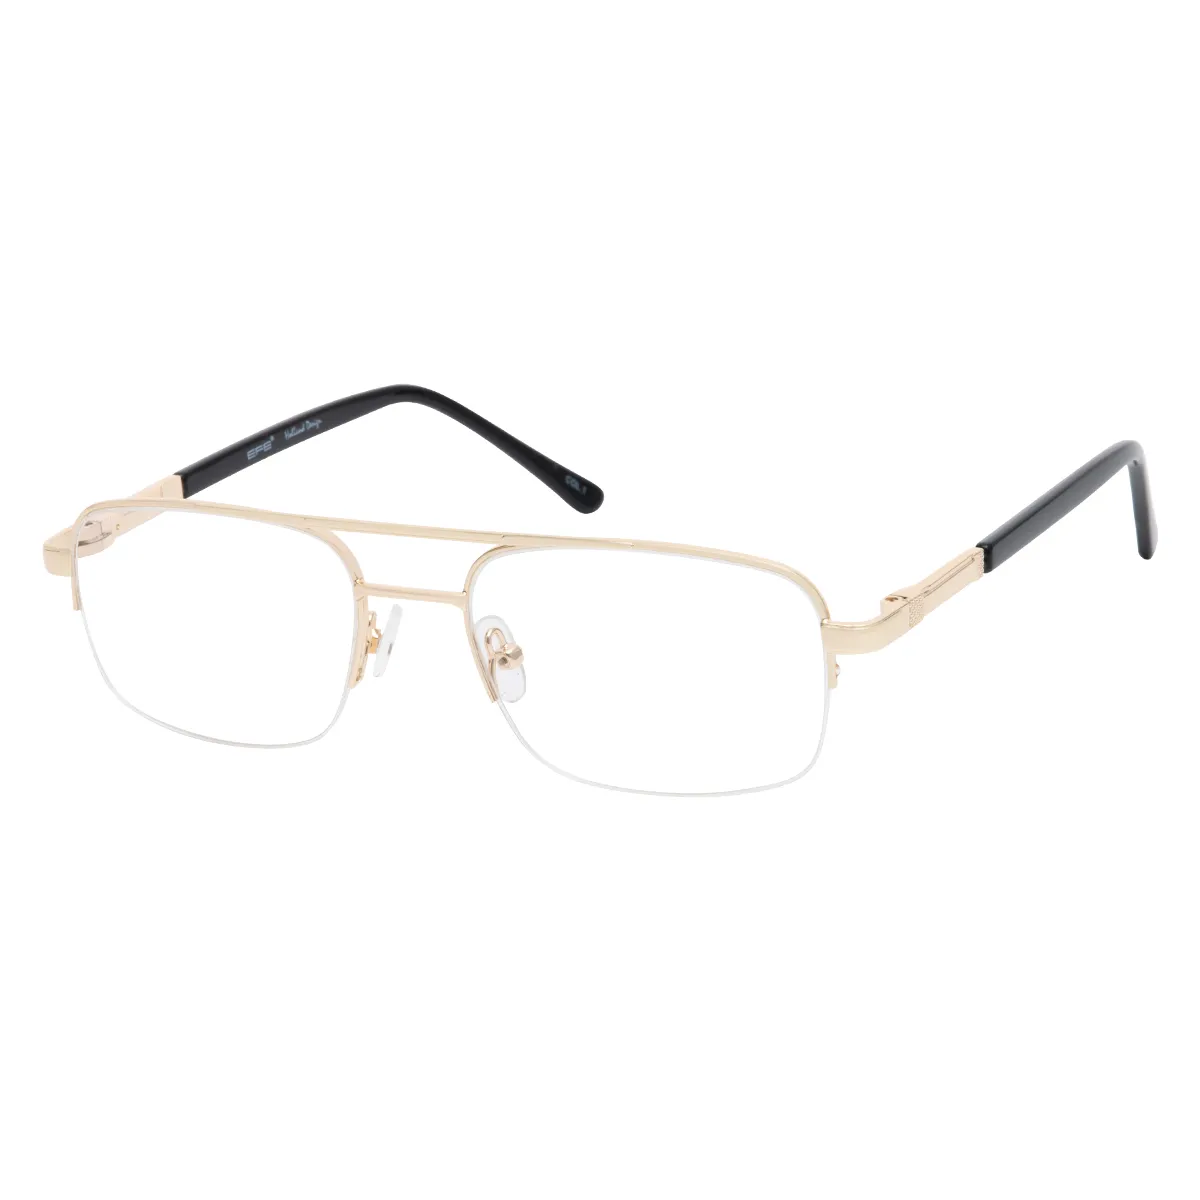 Derek - Half-Rim Gold Glasses for Men